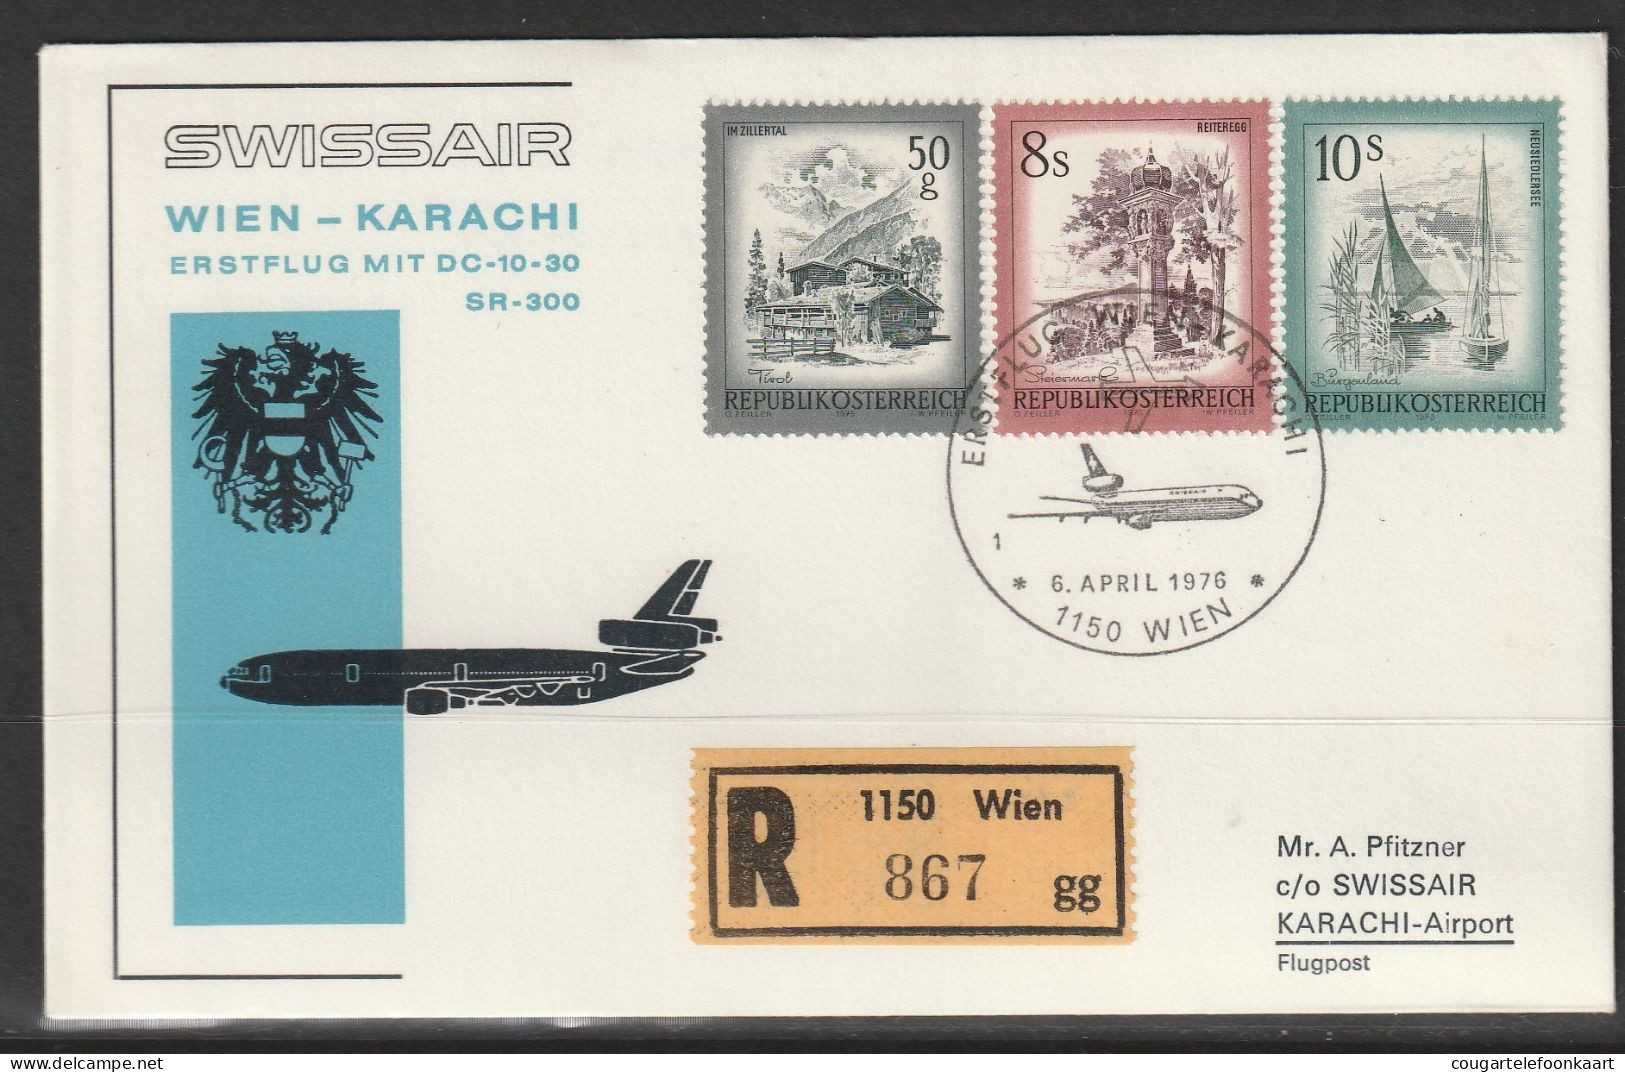 1976, Swissair, Erstflug, Wien-Karachi - First Flight Covers